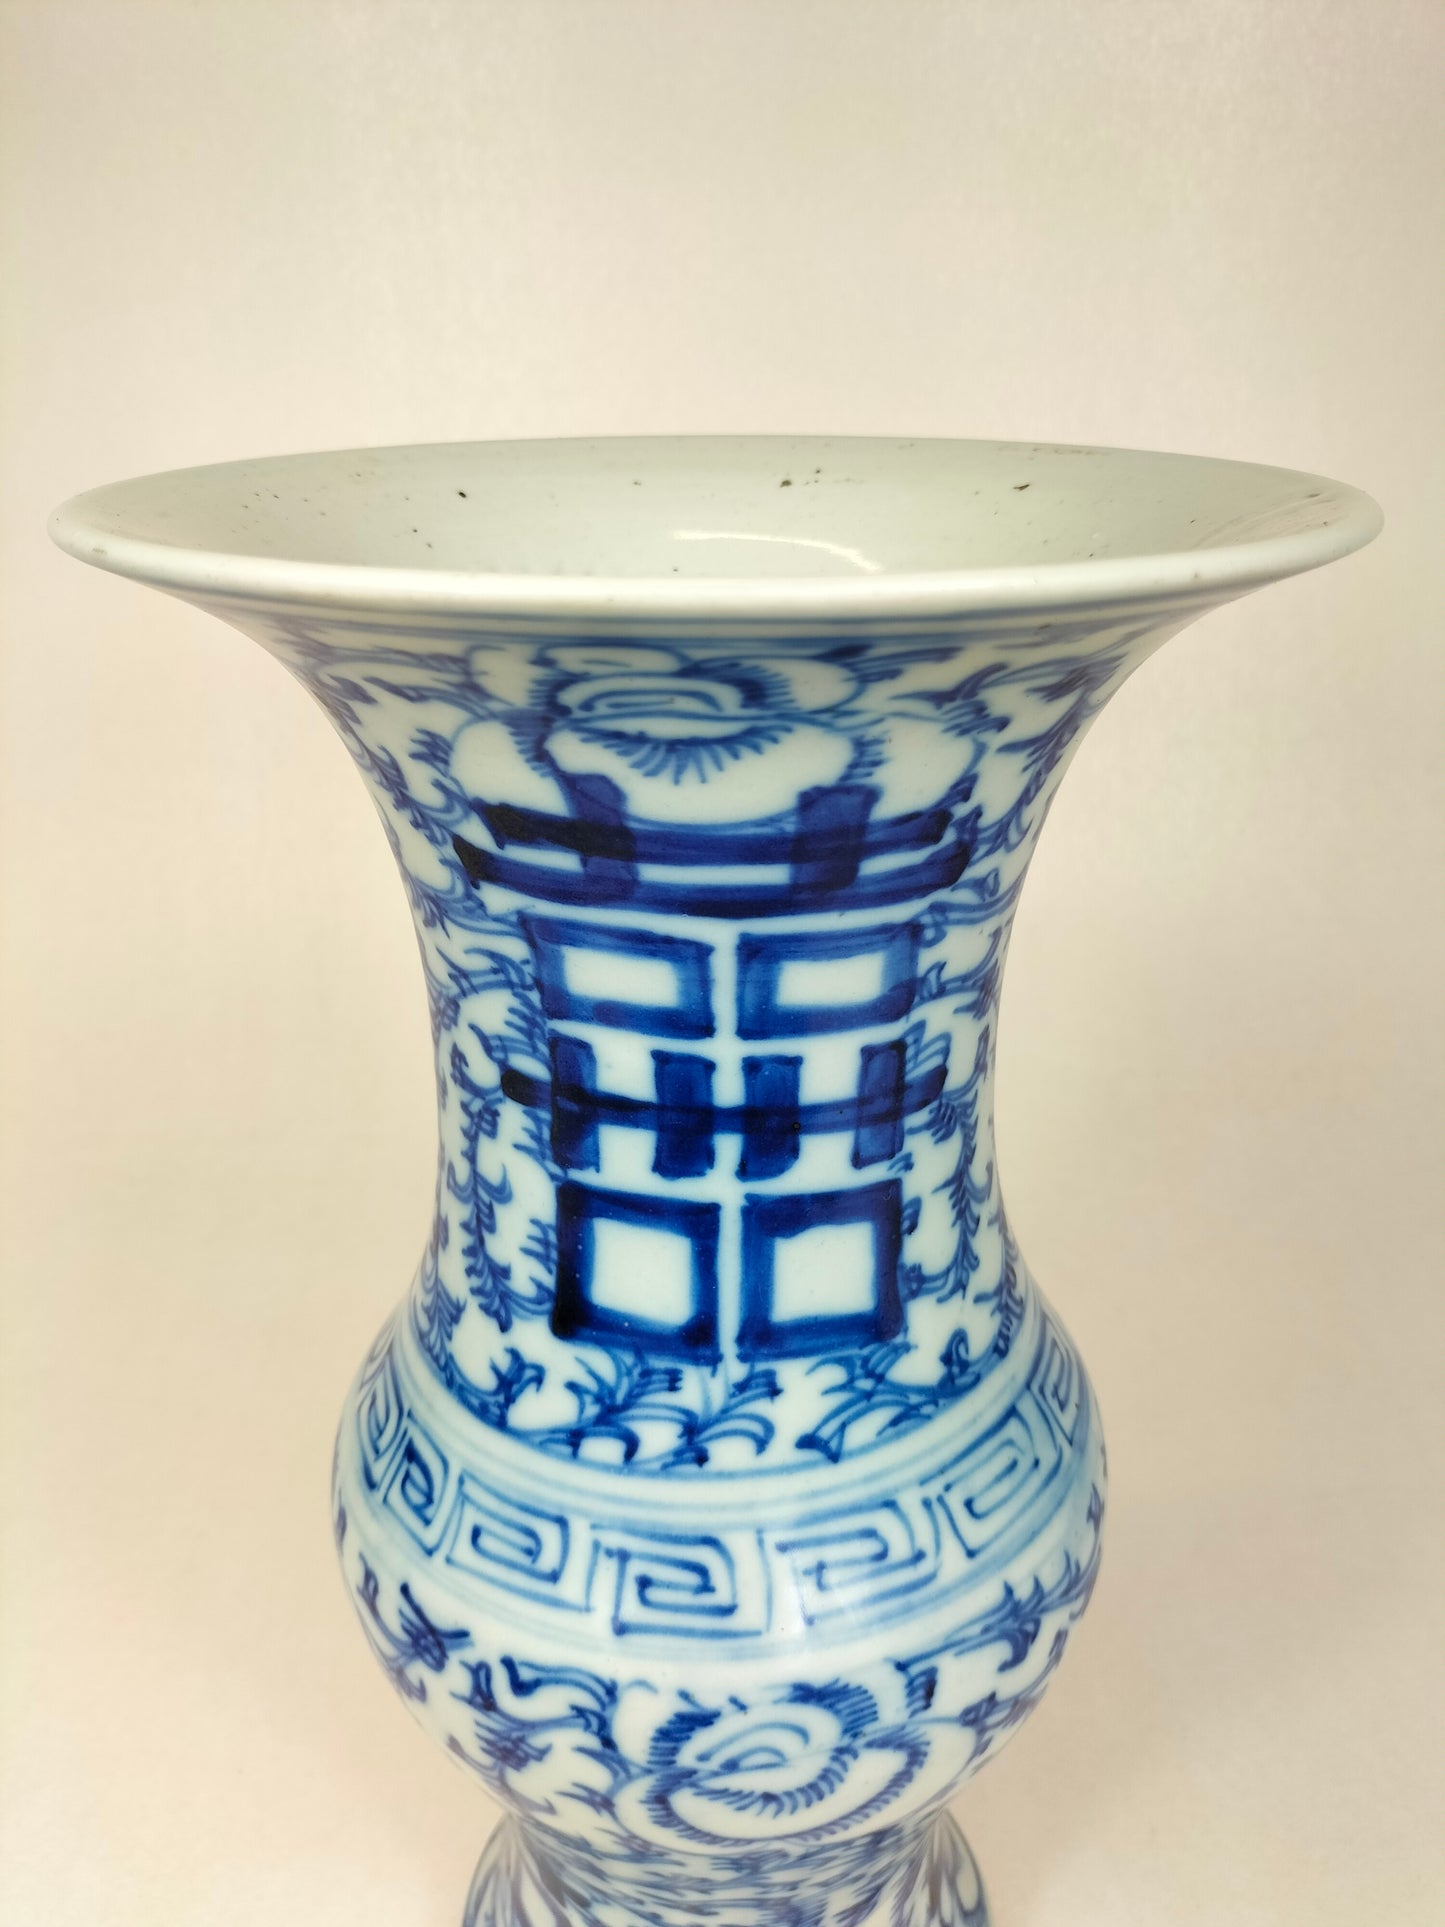 Antigo vaso chinês duplo de felicidade em ienes // Dinastia Qing - século XIX